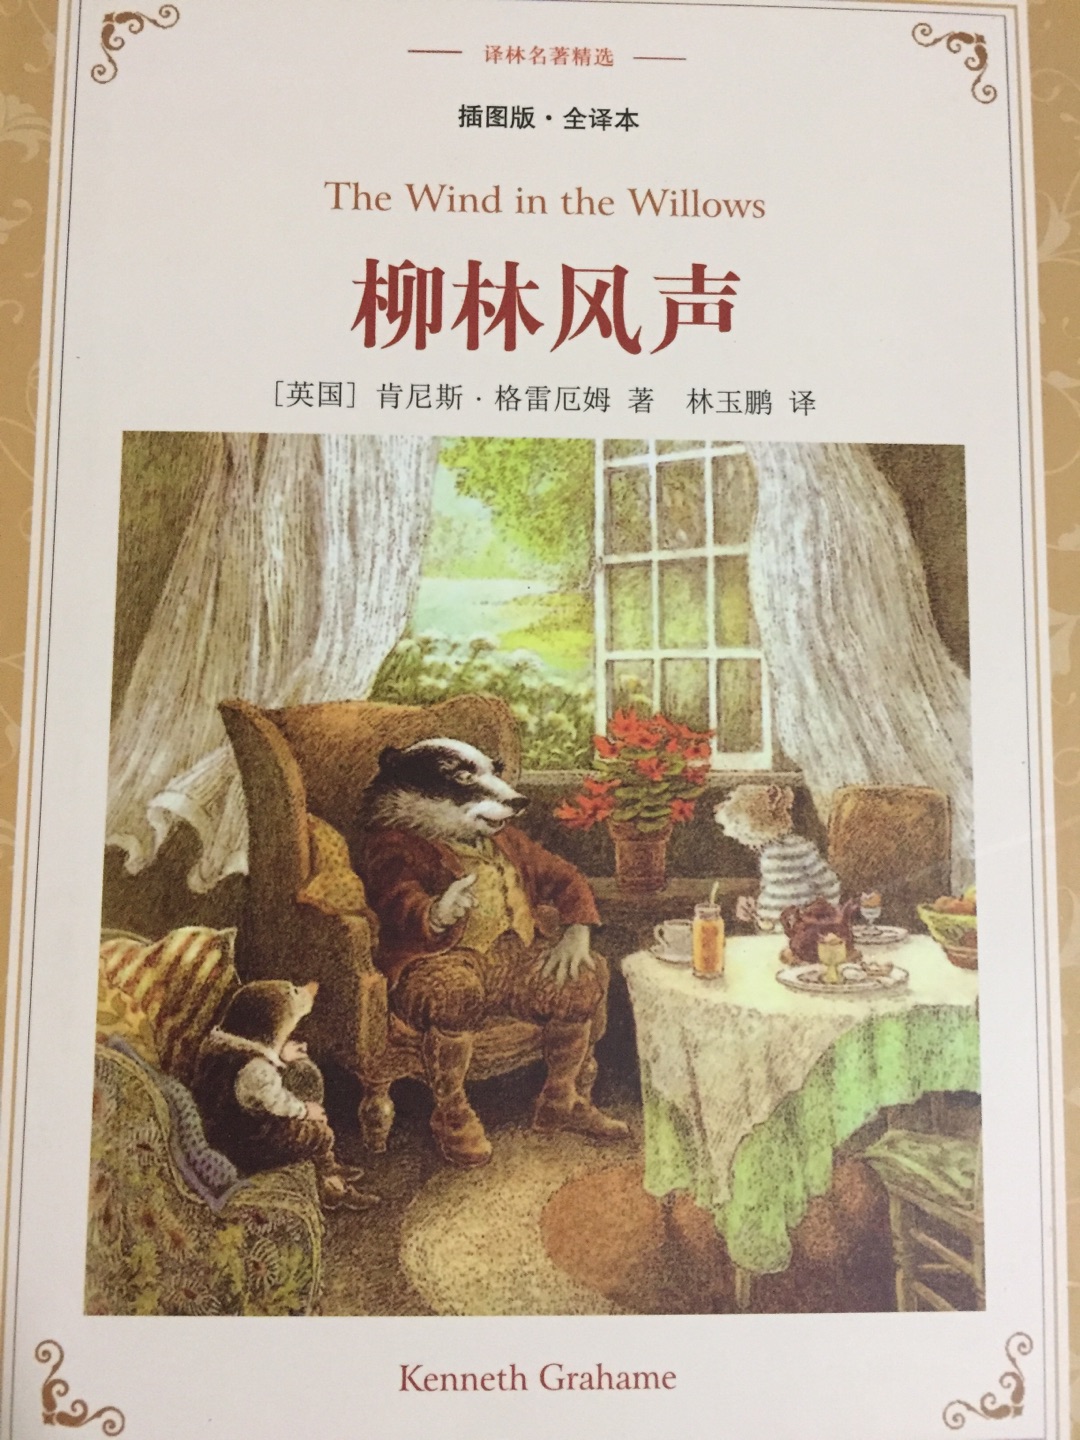 看中译林出版社的全译本买的，希望小朋友喜欢看。物流一如即往得快。